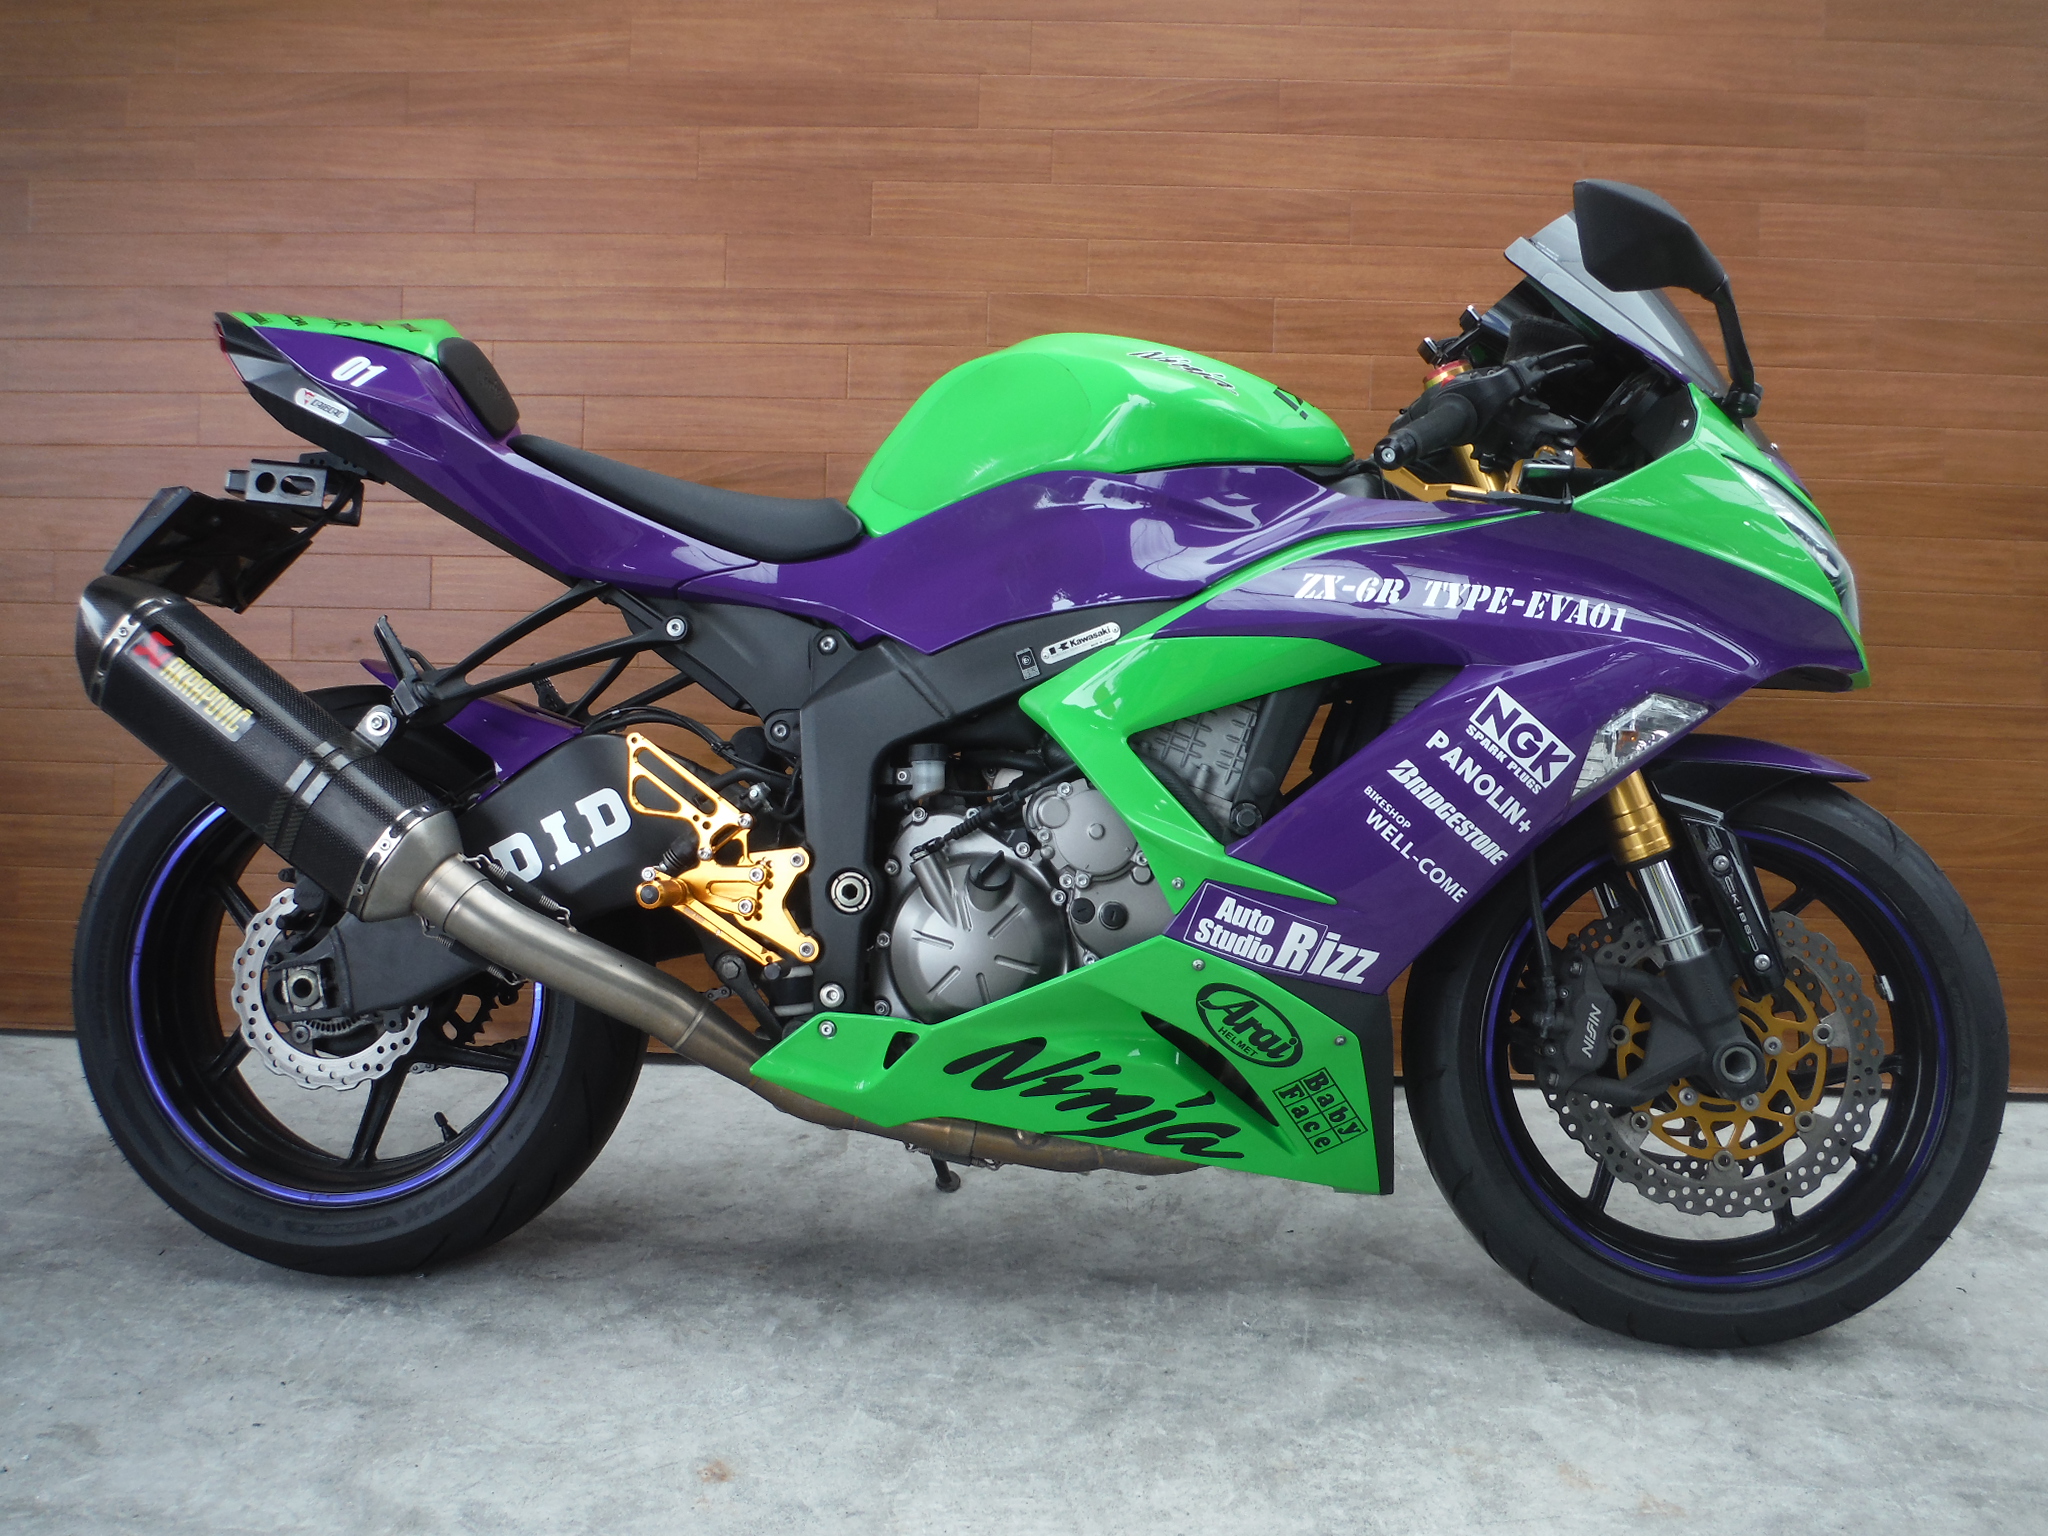 熊本中古車バイク情報 カワサキ Ninja Zx 6r Abs 600 緑紫 熊本のバイクショップ アール バイク の新車 中古車販売や買取 レンタルバイクのことならおまかせください